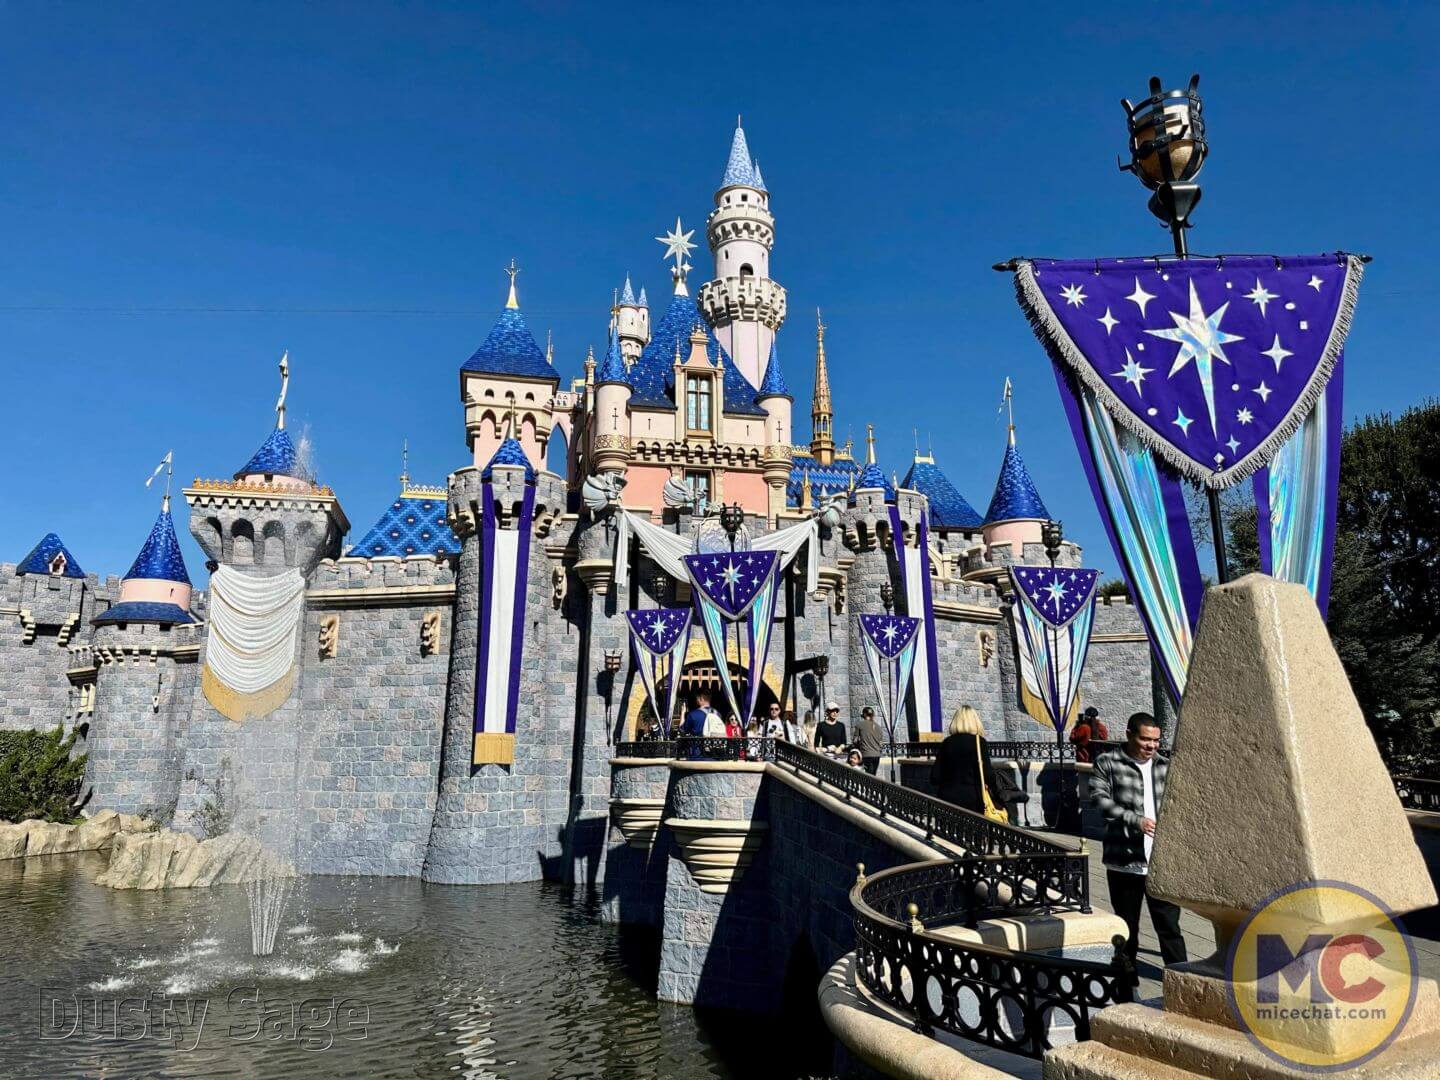 UPDATED: Disney100 Celebration Decor Arrives at Disneyland!